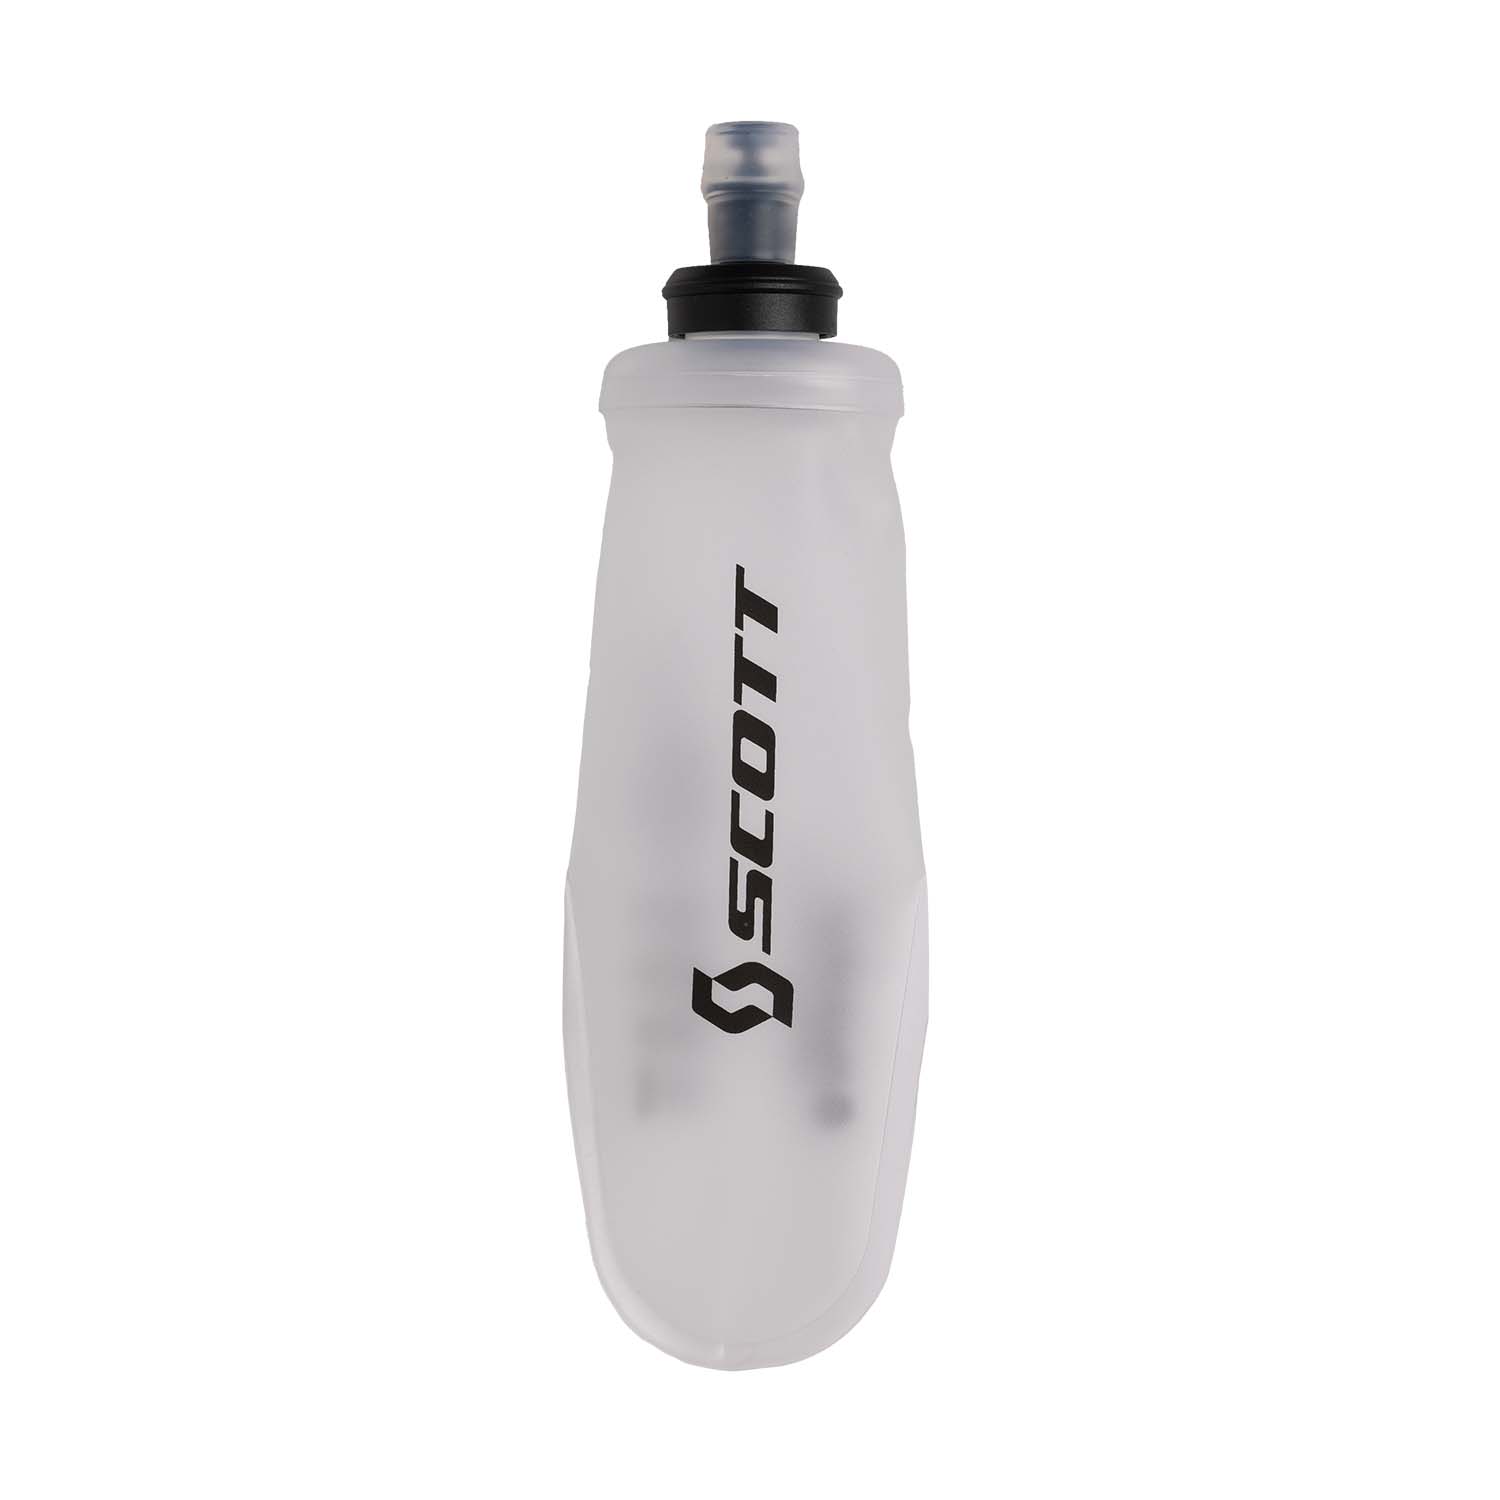 Scott Ultraflask 250 ml Flask - Clear